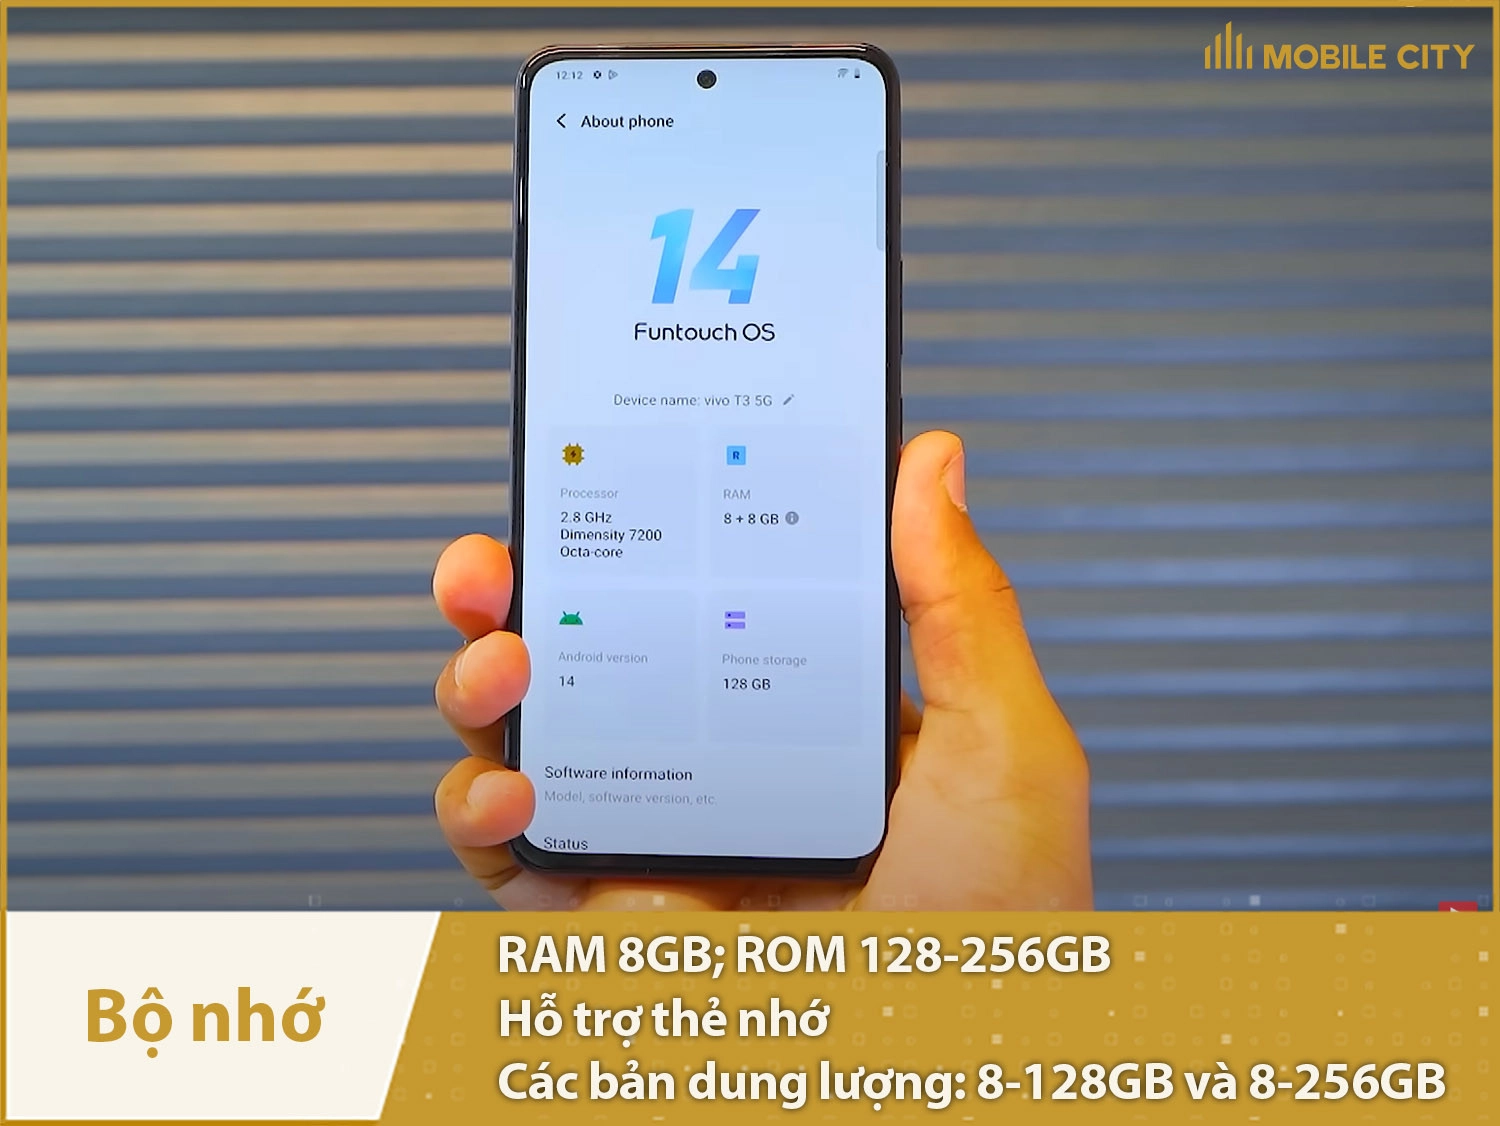 Dung lượng Vivo T3 5G: 128GB và 256GB